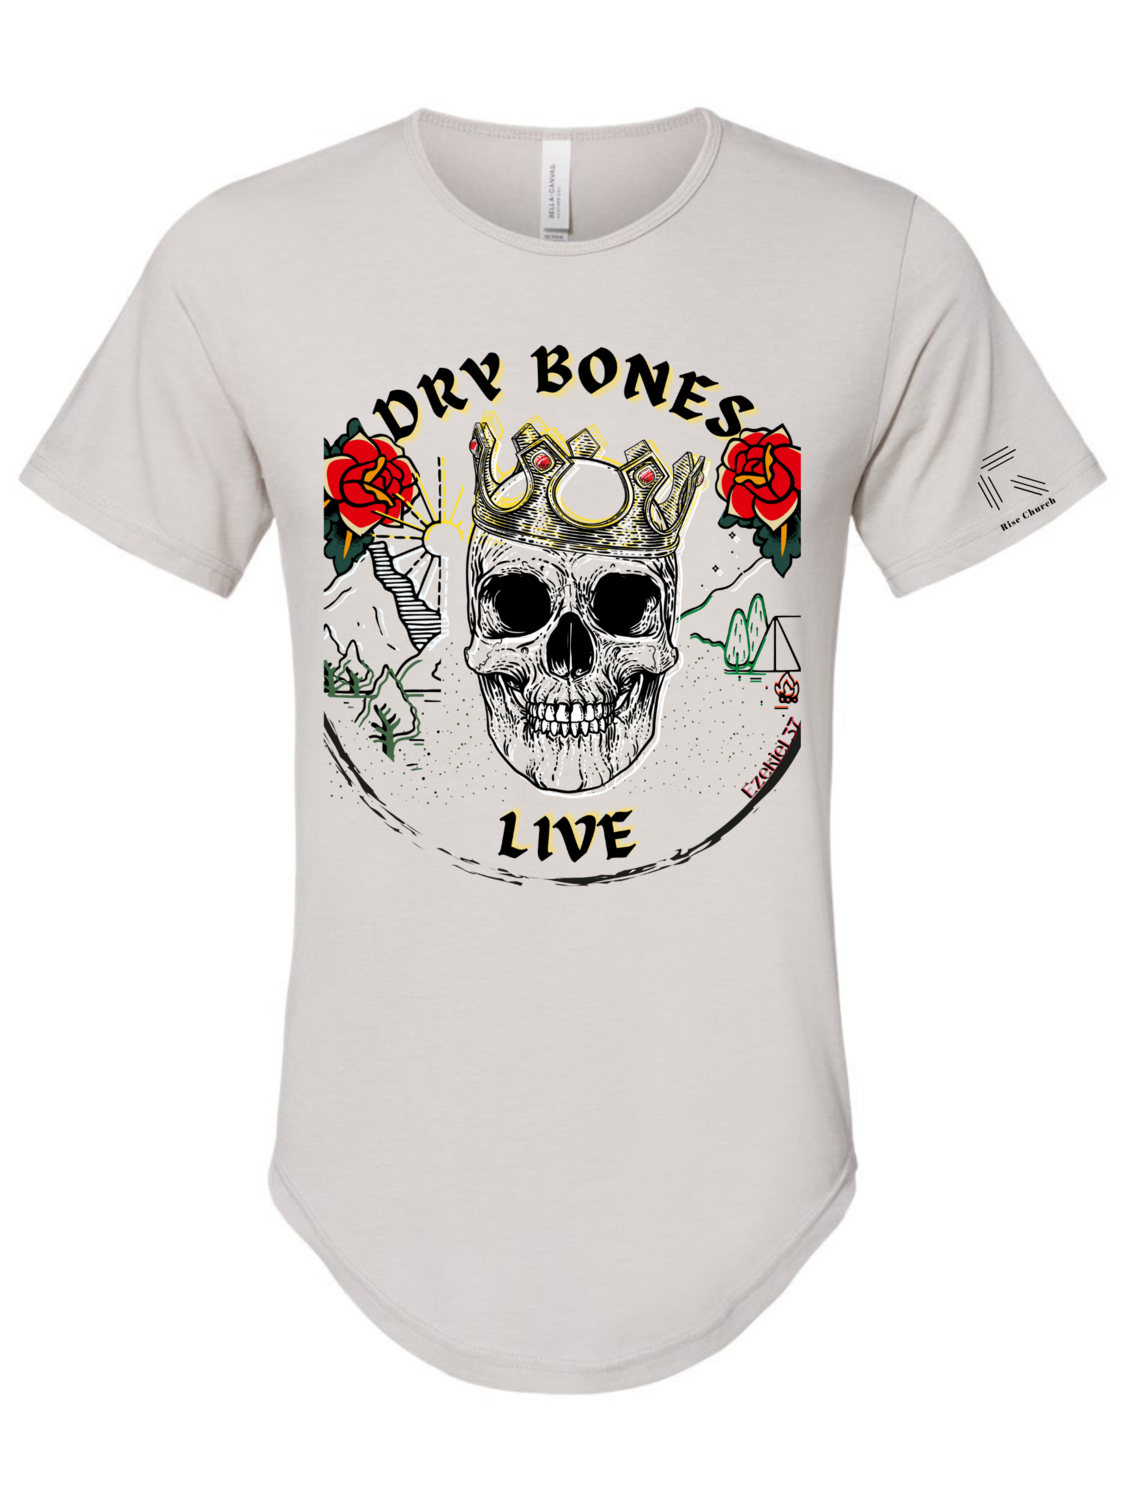 Dry Bones Live